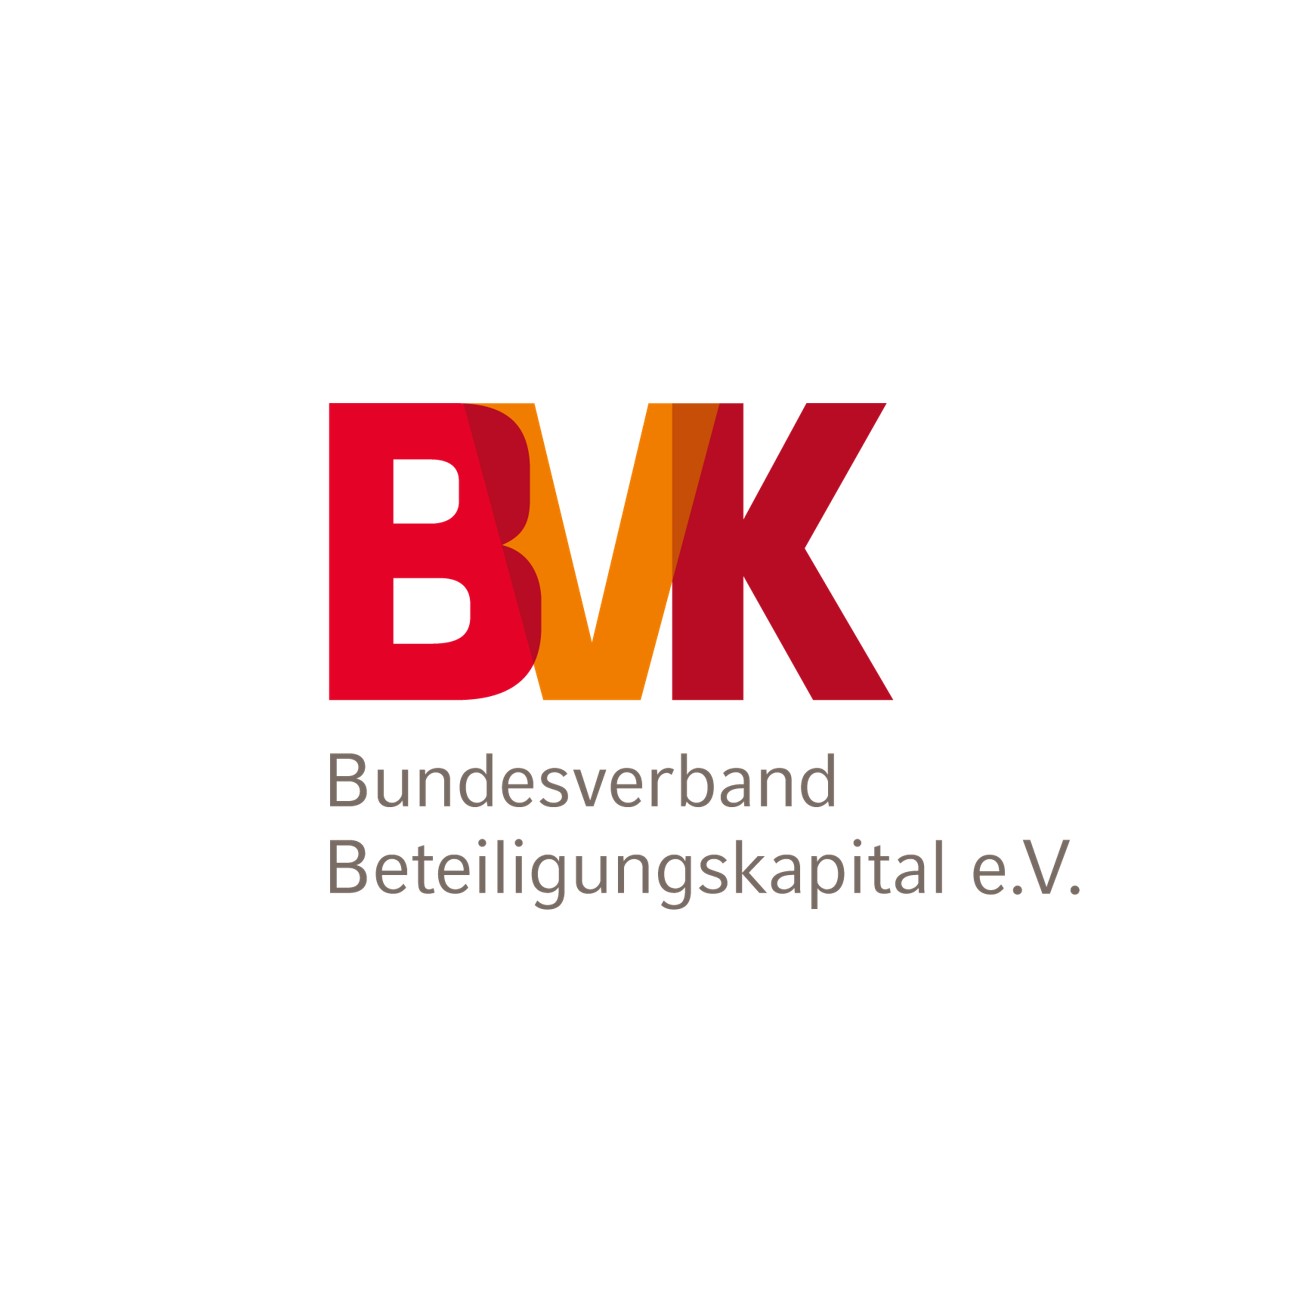 Bundesverband Beteiligungskapital: BVK